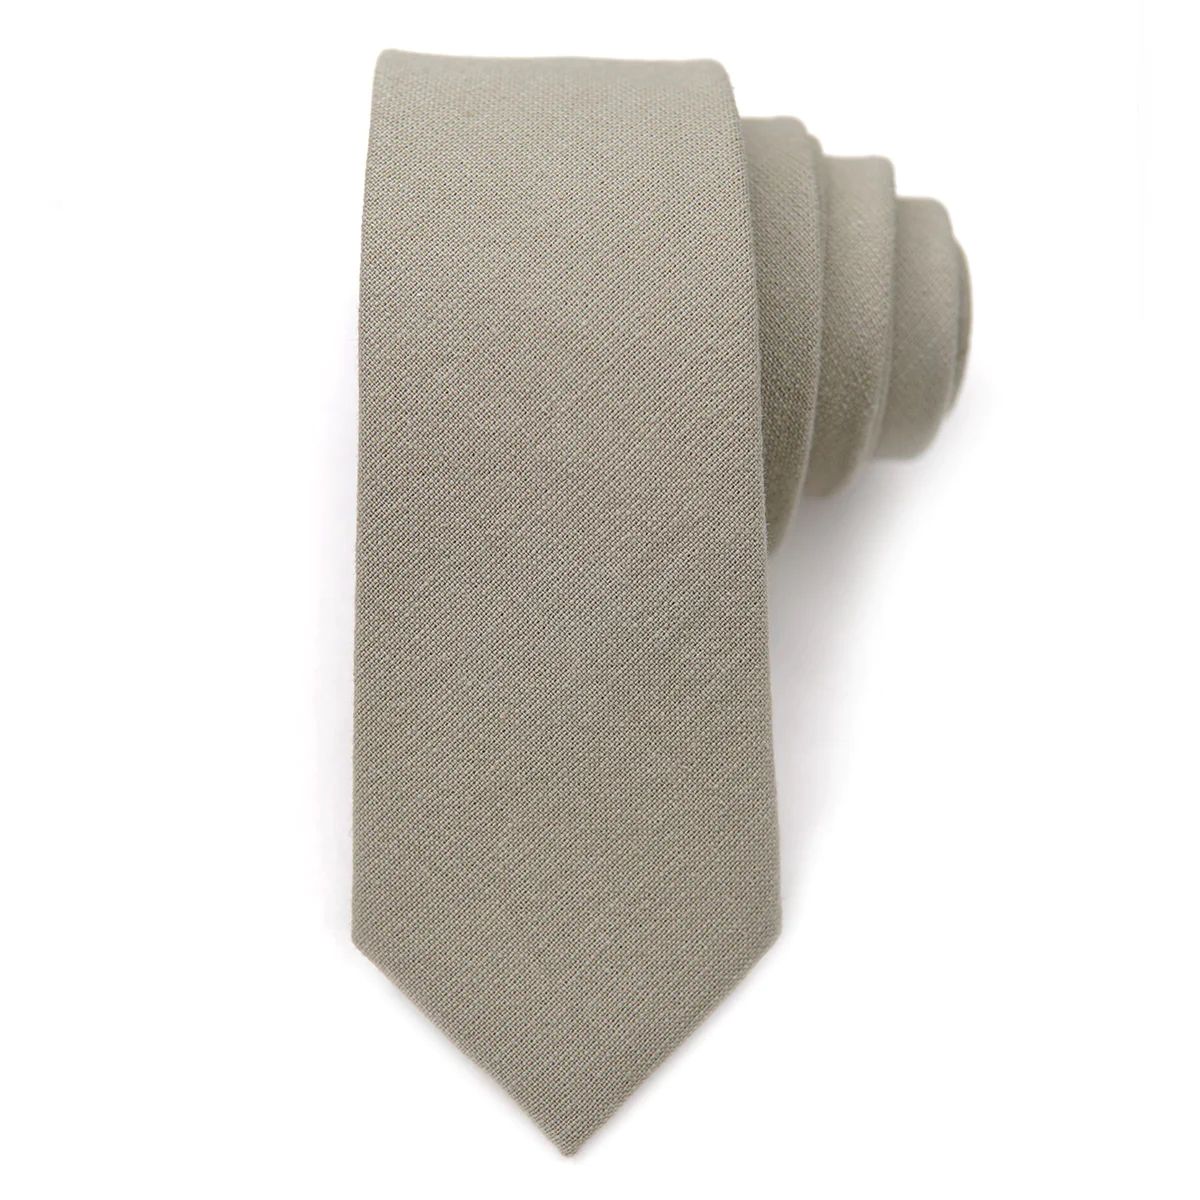 Sage - Boon Ties Necktie for Men | Boon Ties